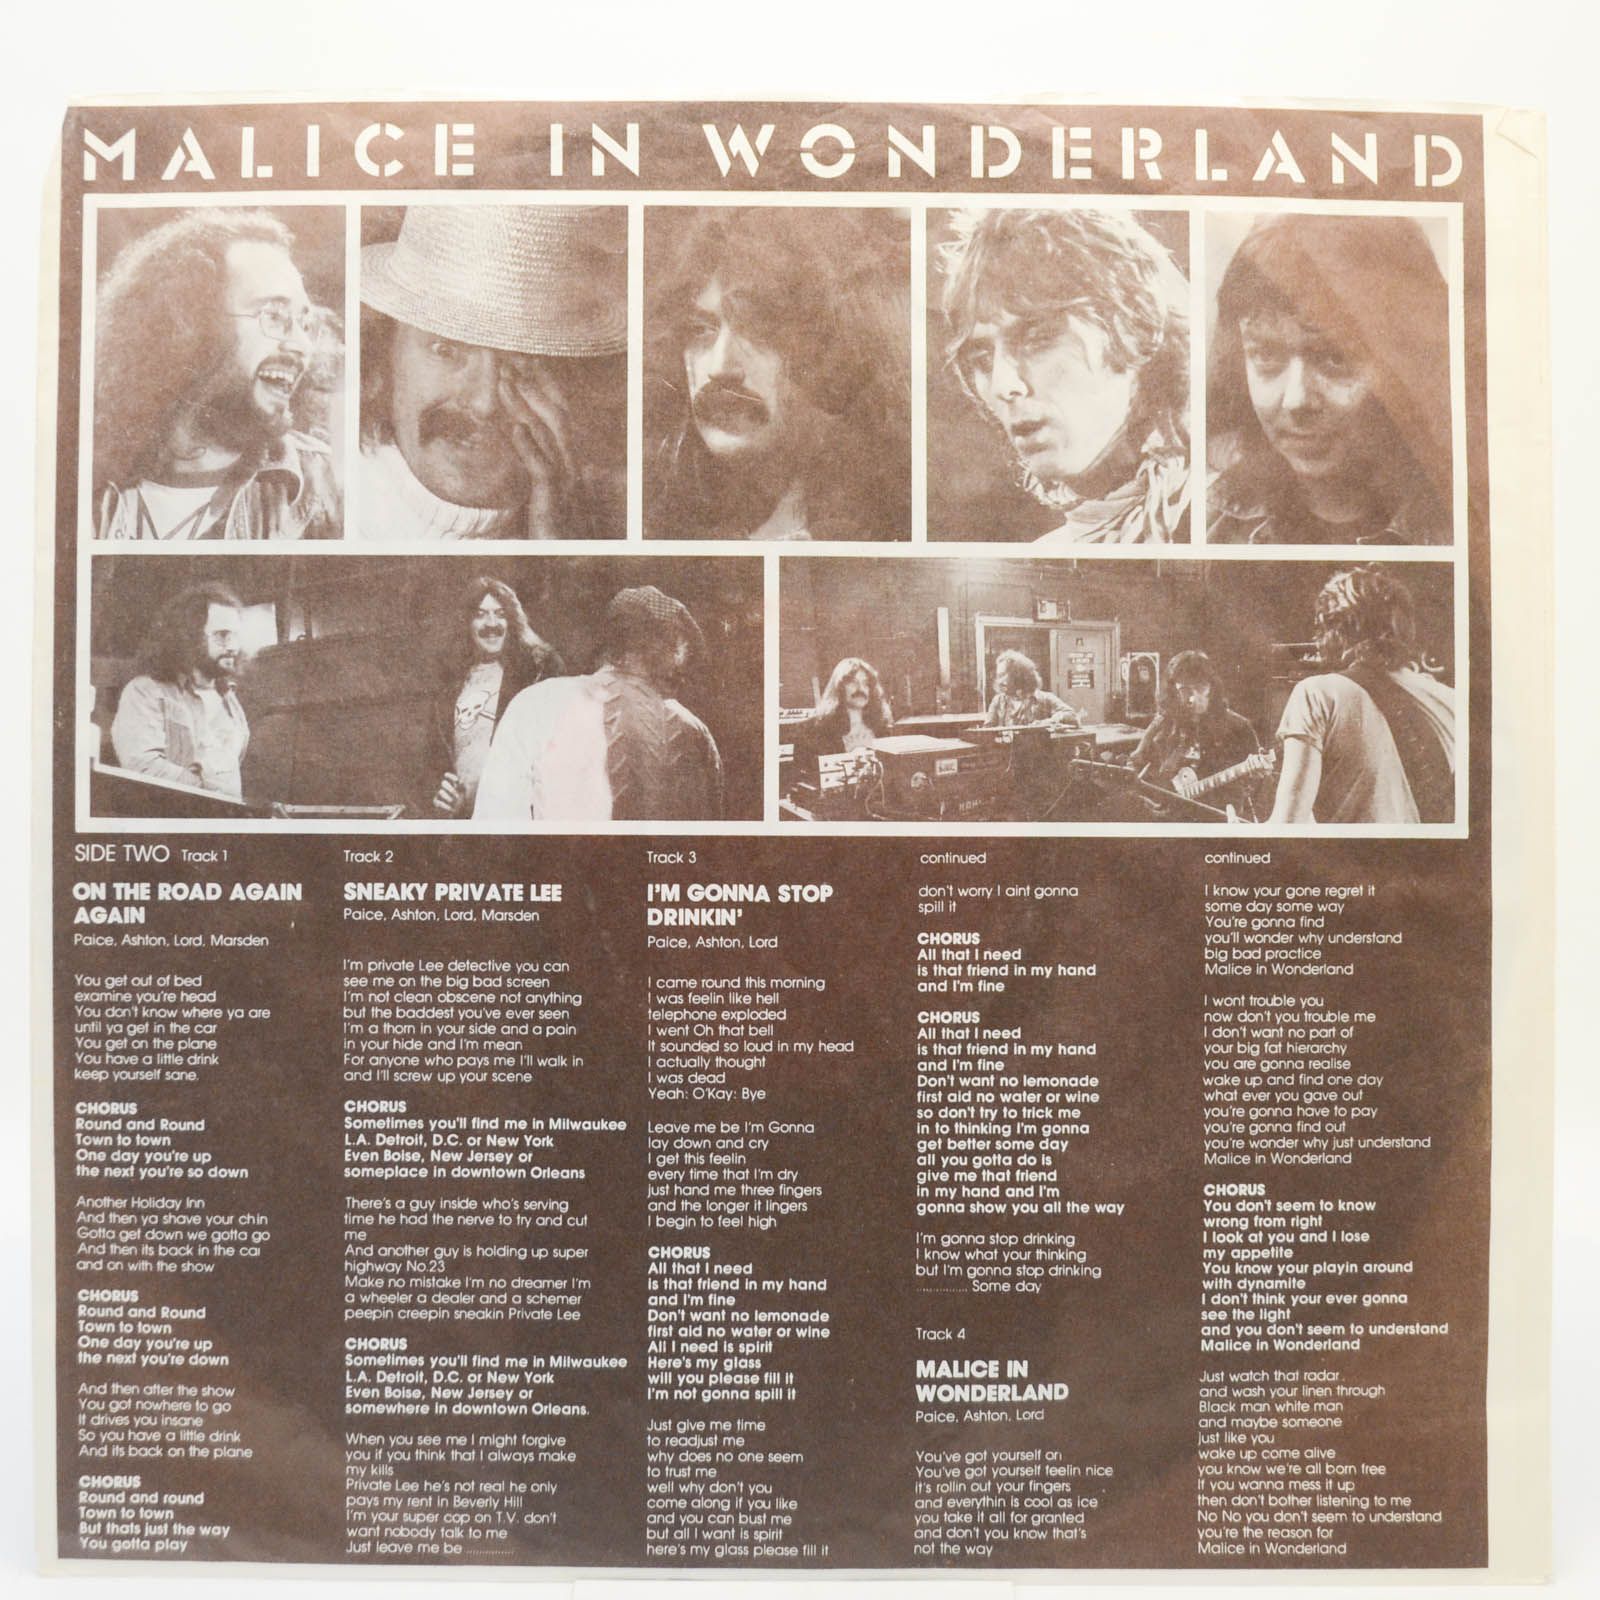 Paice Ashton Lord — Malice In Wonderland, 1977